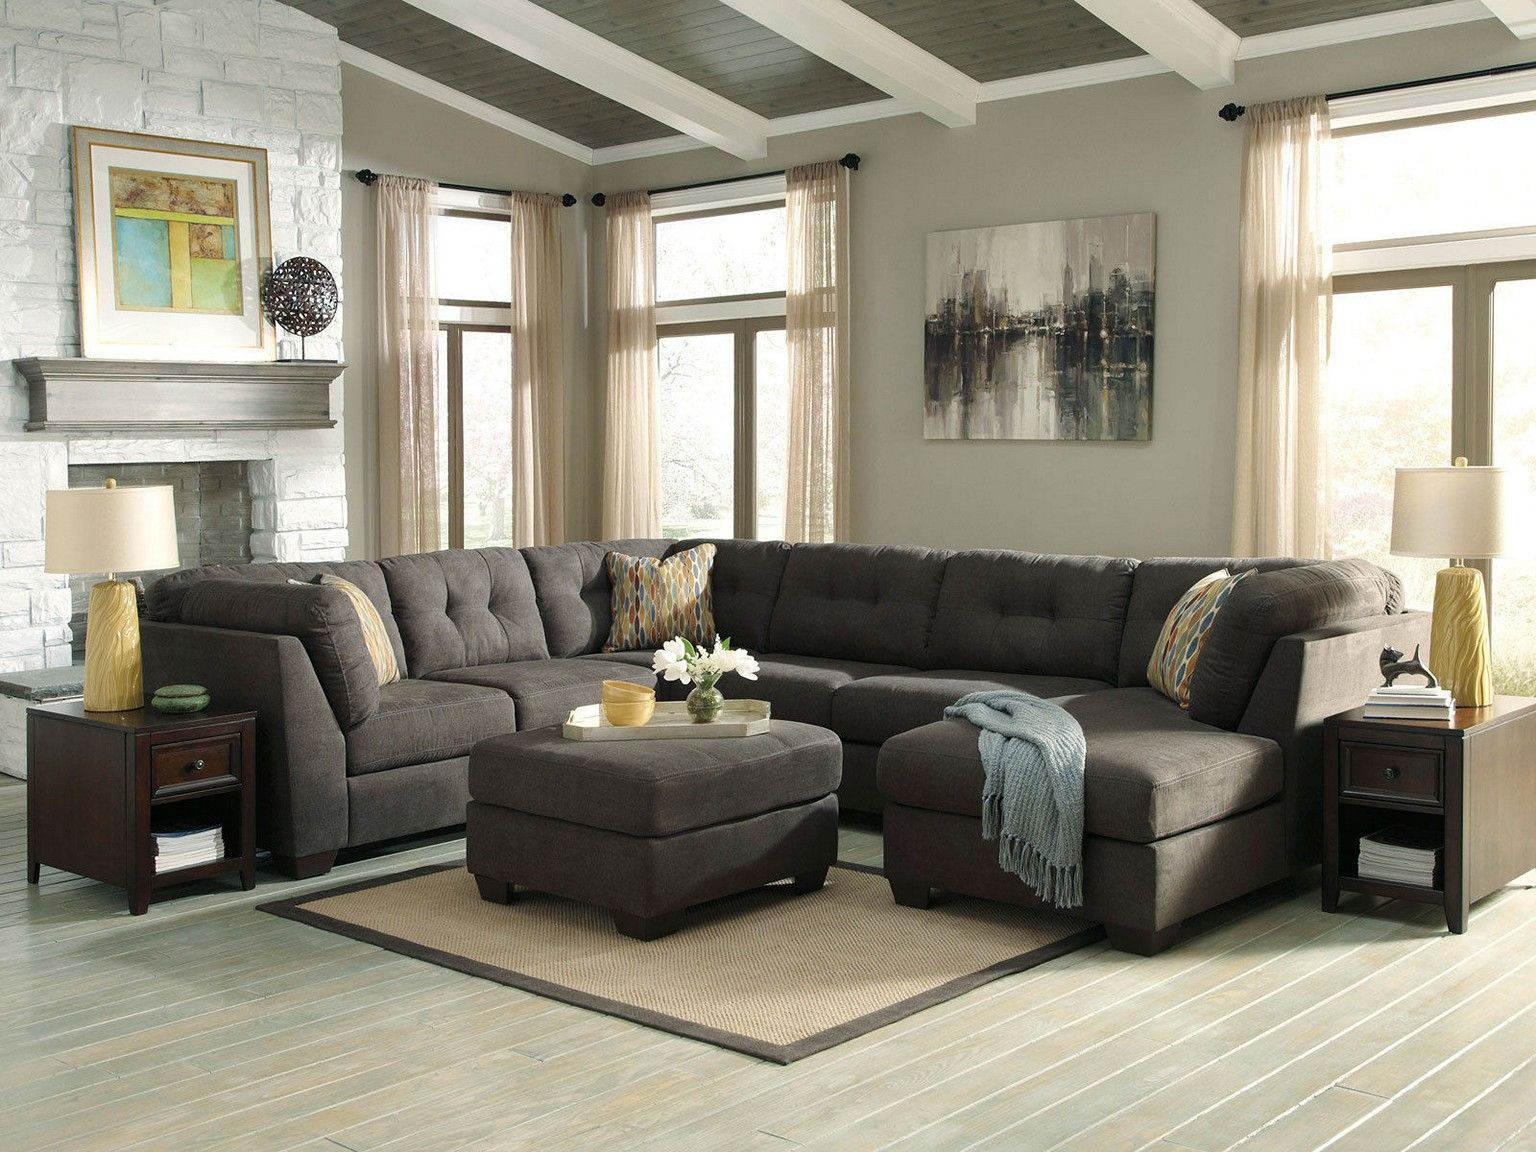 Minimalist Living Room Furniture
 30 Minimalist Living Room Ideas & Inspiration to Make the